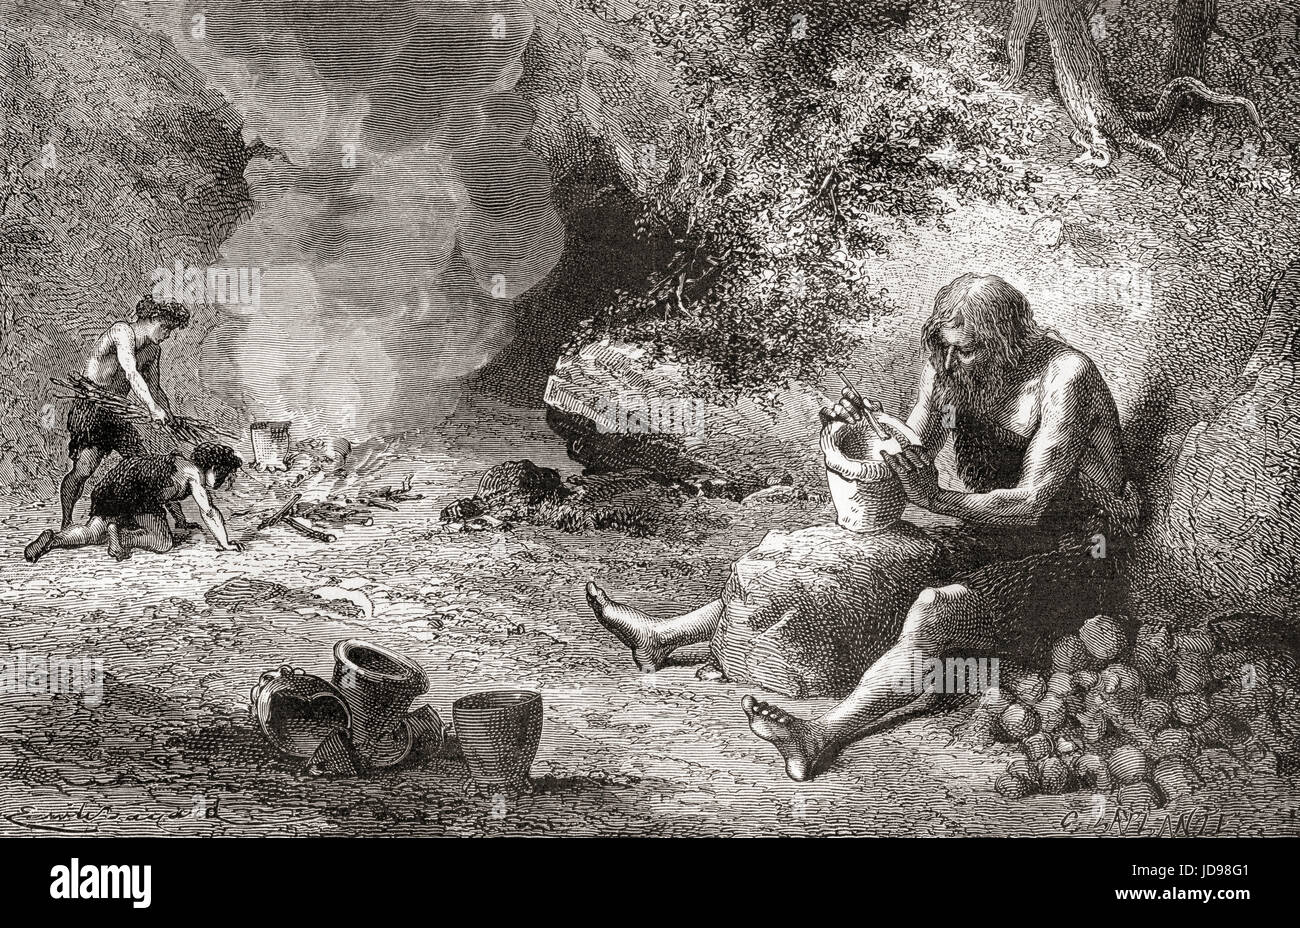 Un alfarero en el trabajo durante el Neolítico, Nueva Edad de Piedra o edad de la piedra pulida. A partir de l'Homme Primitif, publicado el 1870. Foto de stock